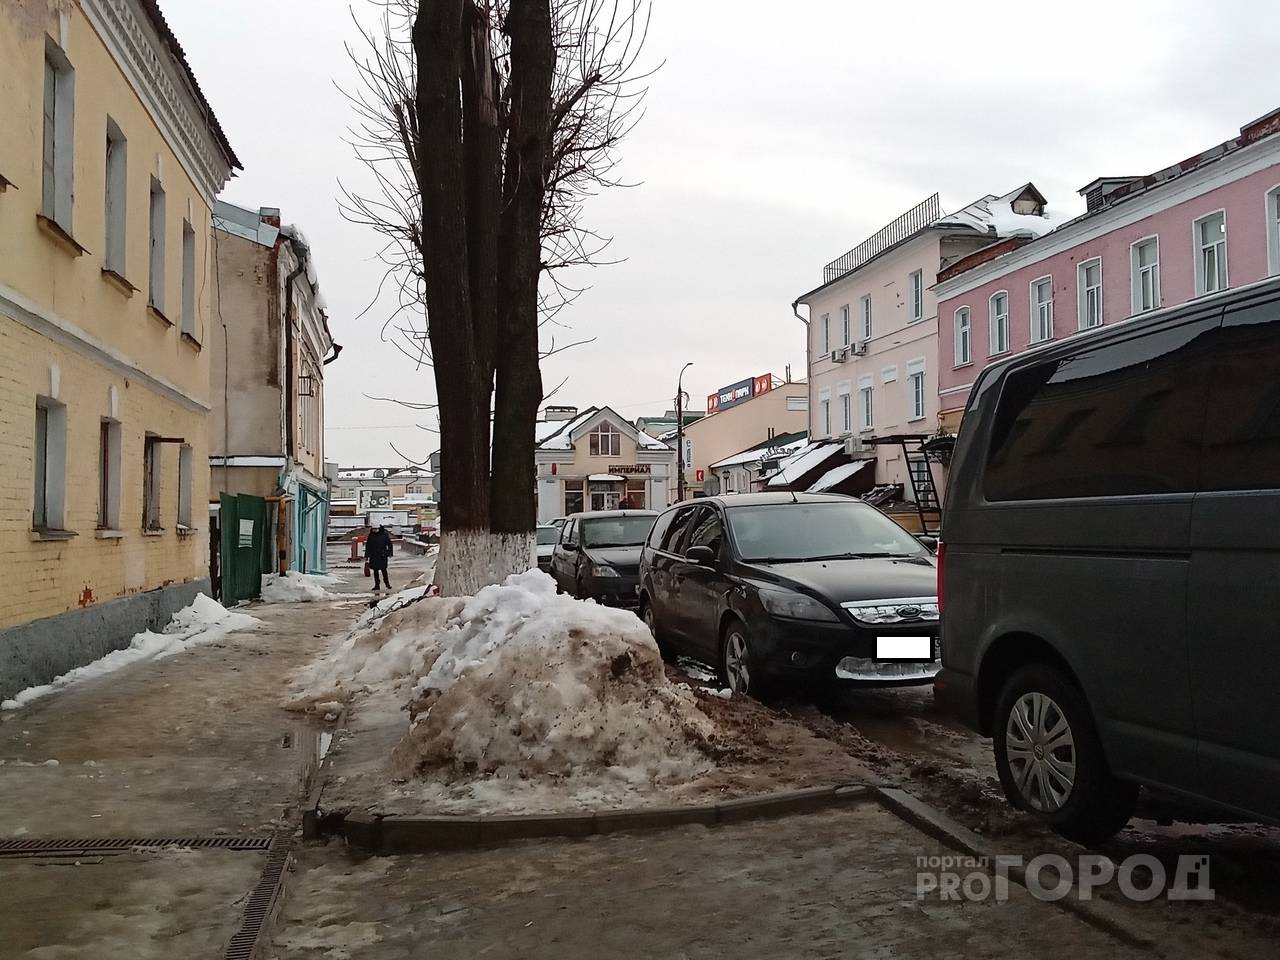 Синоптики предупреждают о "погодных качелях" во Владимире